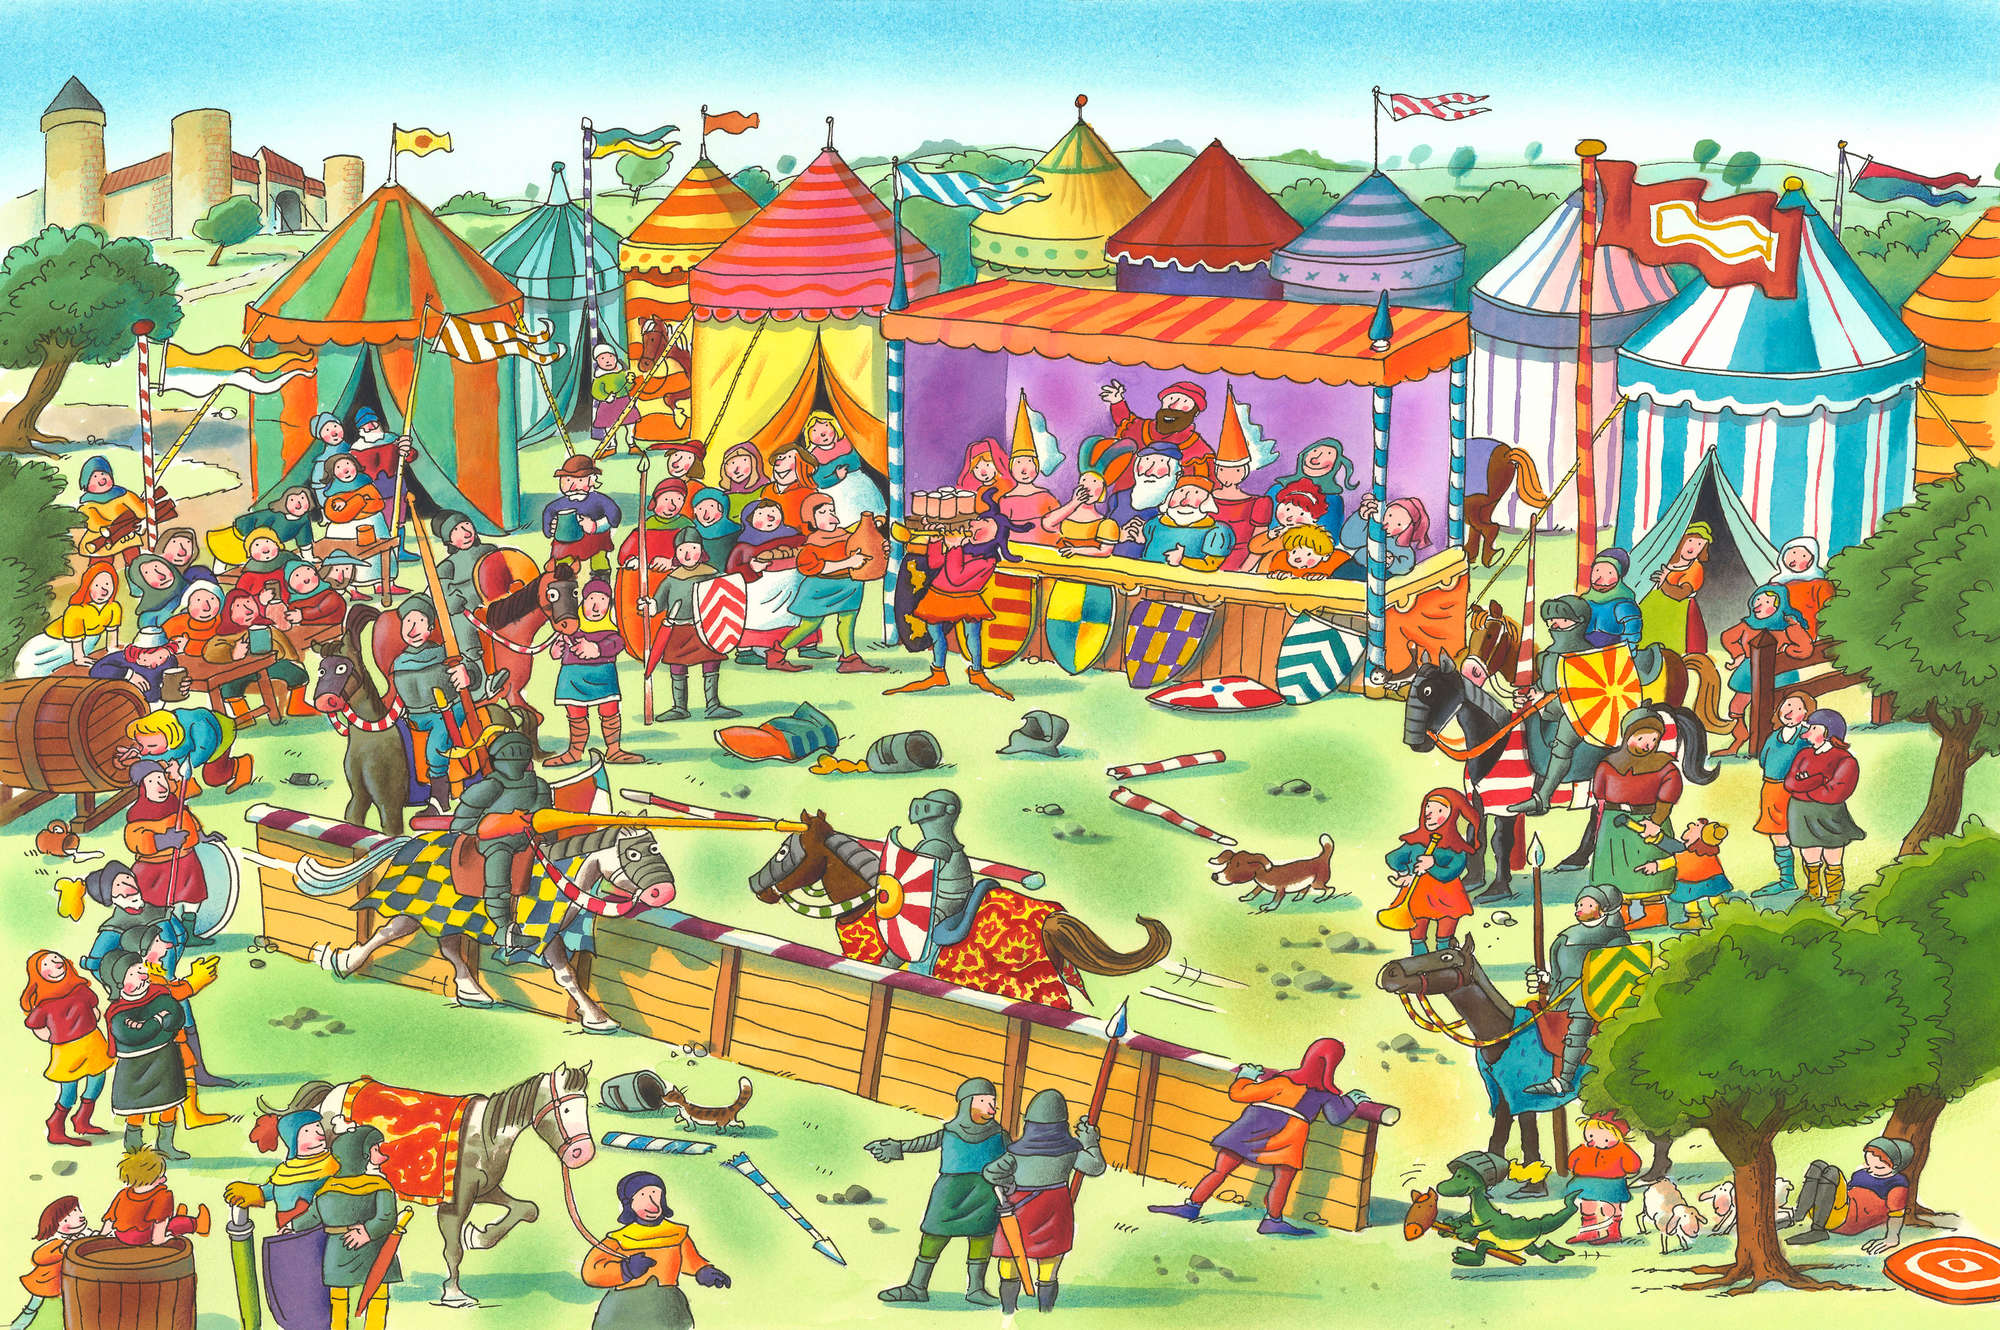             Papier peint panoramique enfants Fête des chevaliers avec festival Bleu et jaune sur intissé lisse mat
        